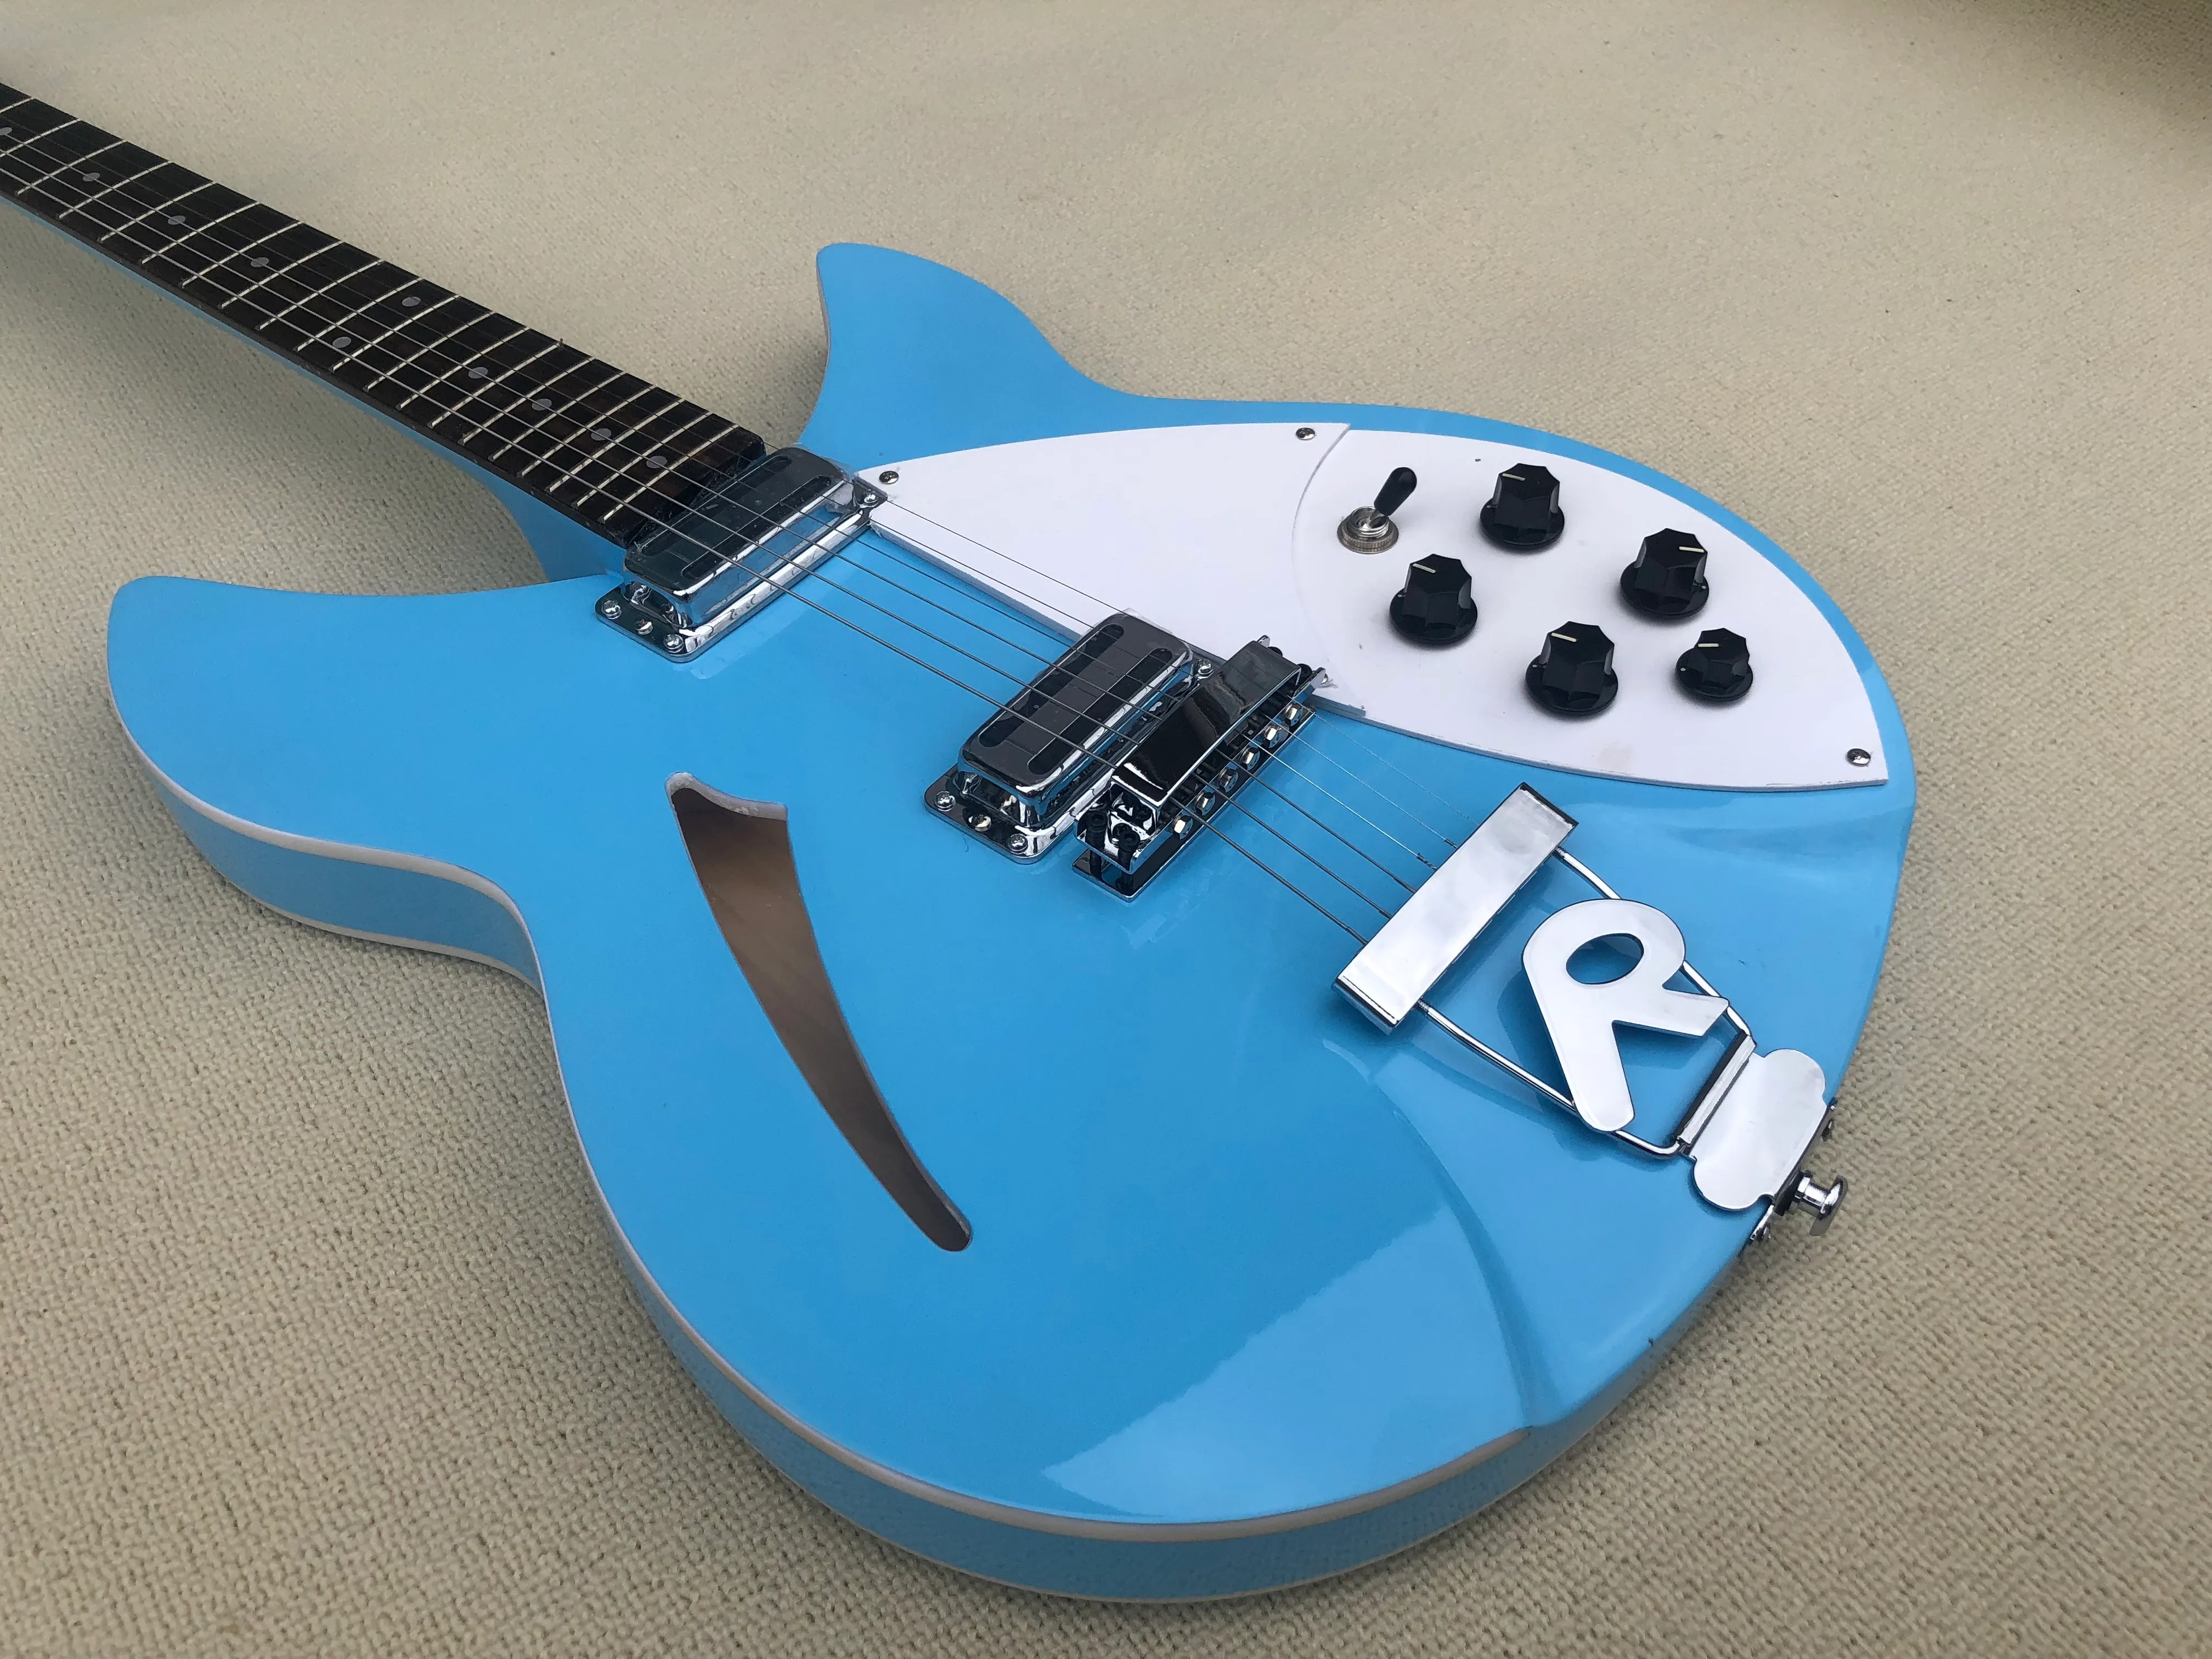 Nuova chitarra elettrica F-Hole a 6 corde di alta qualità, vernice blu metallo, centro mezzo vuoto, camioncino coreano, trasporto pacchi